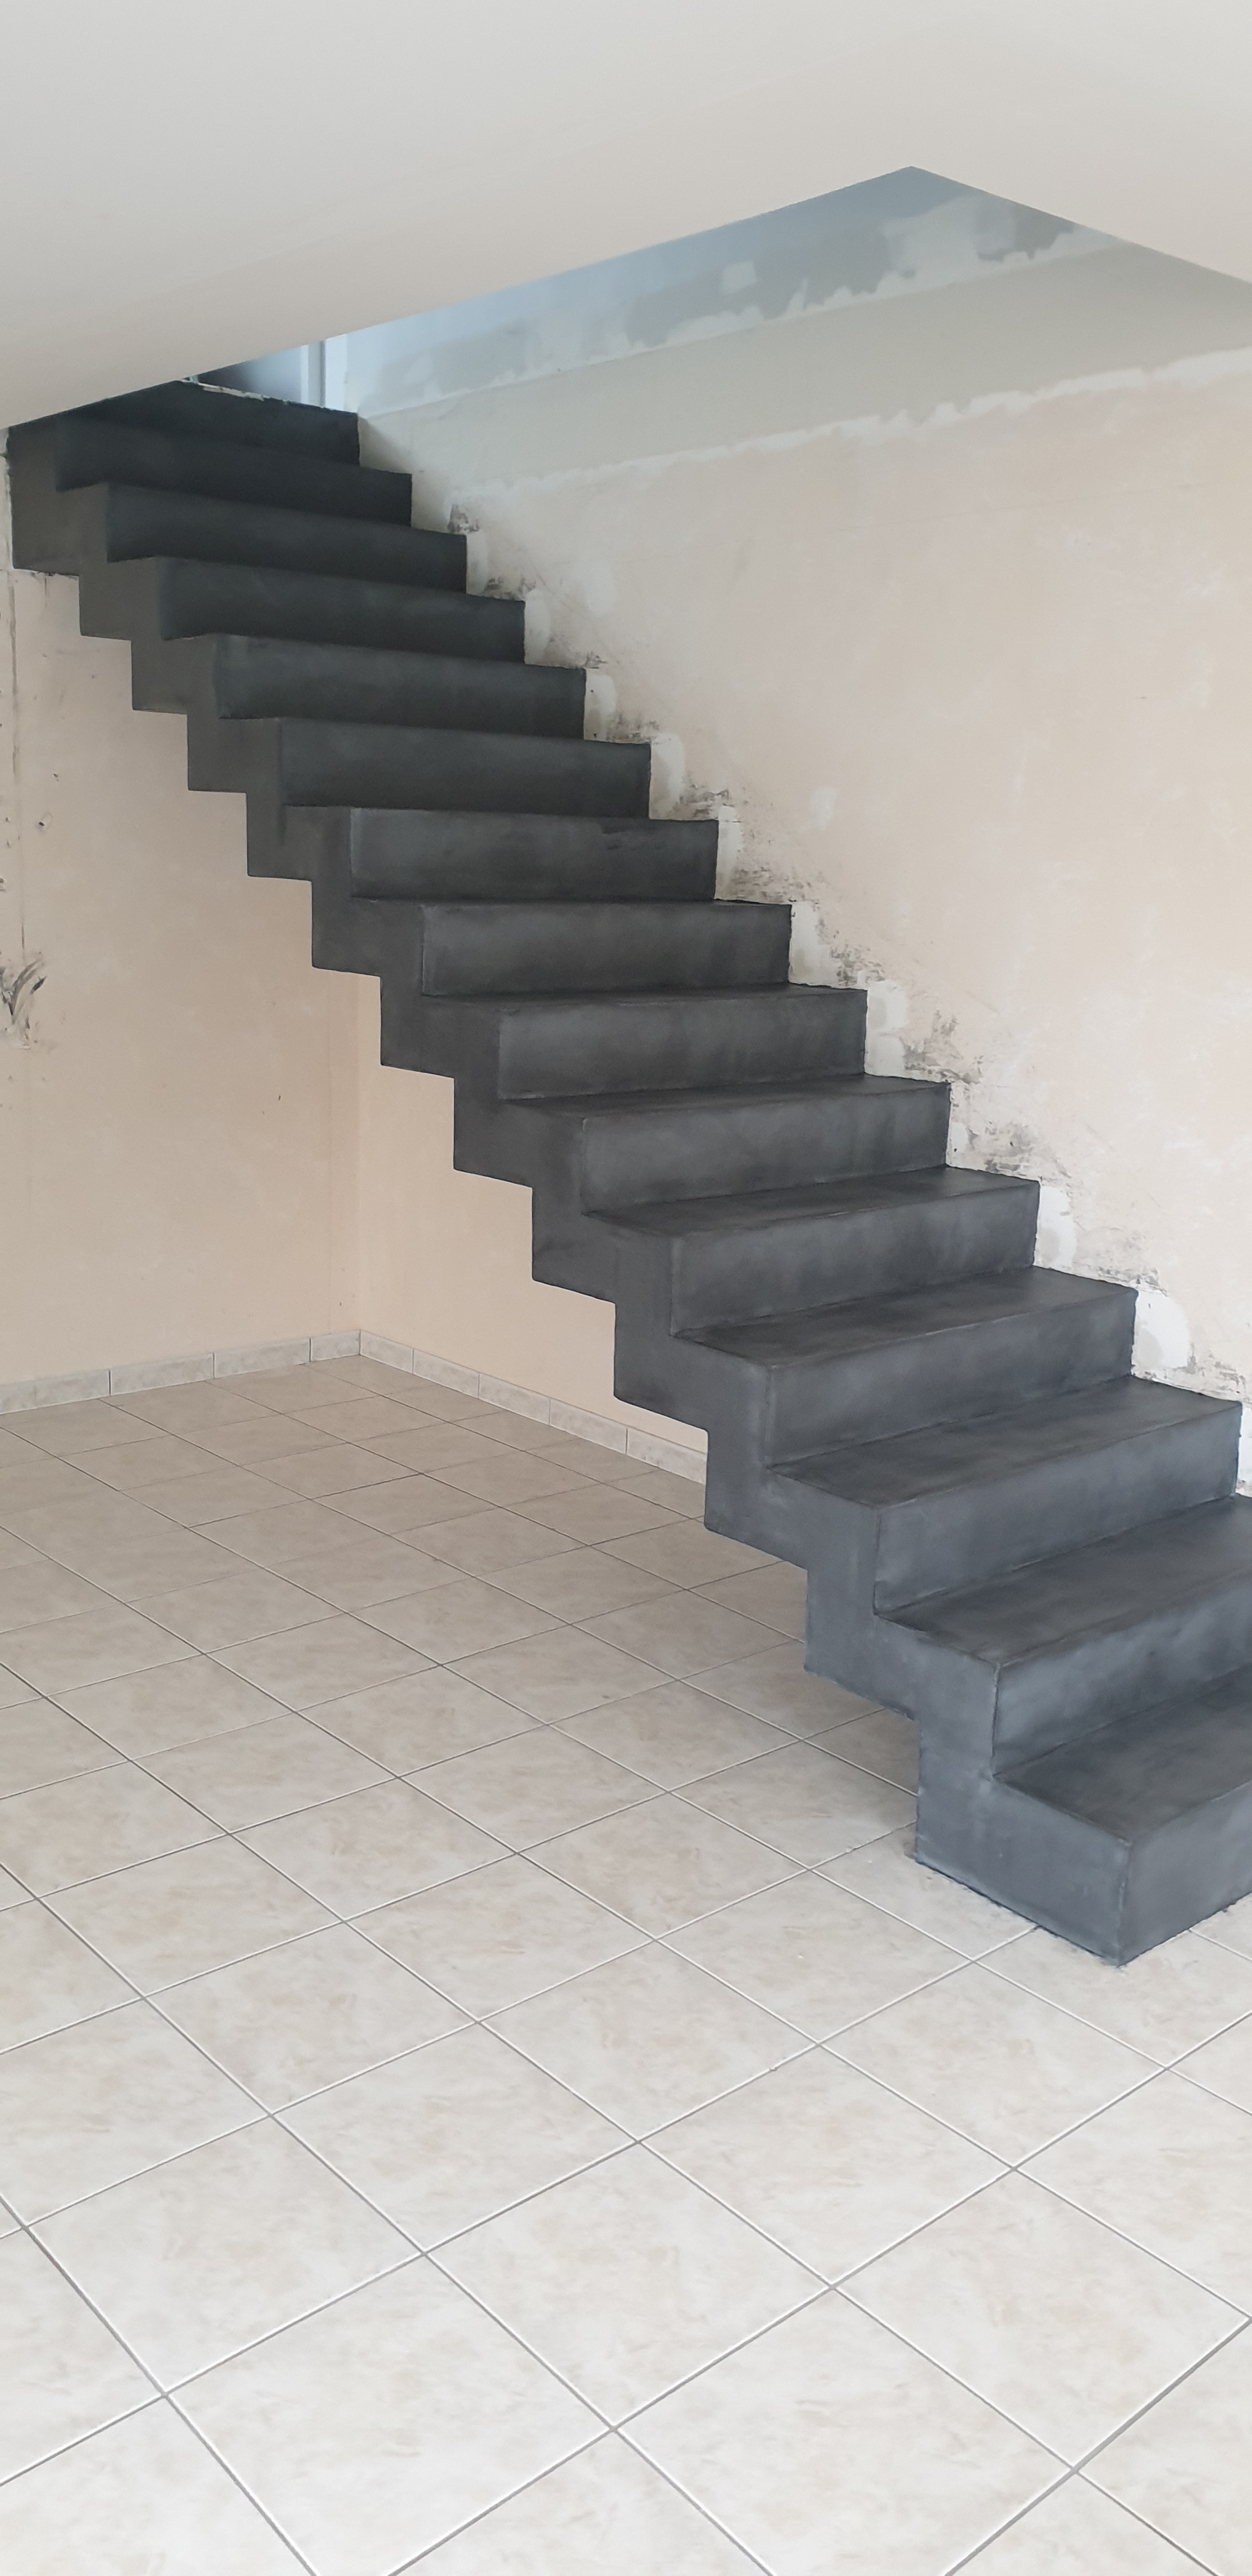 remarquable escalier crémaillère droit en béton ciré vernis mat couleur gris aberdeen à nort sur erdre dans le département de la Loire Atlantique pour un particulier